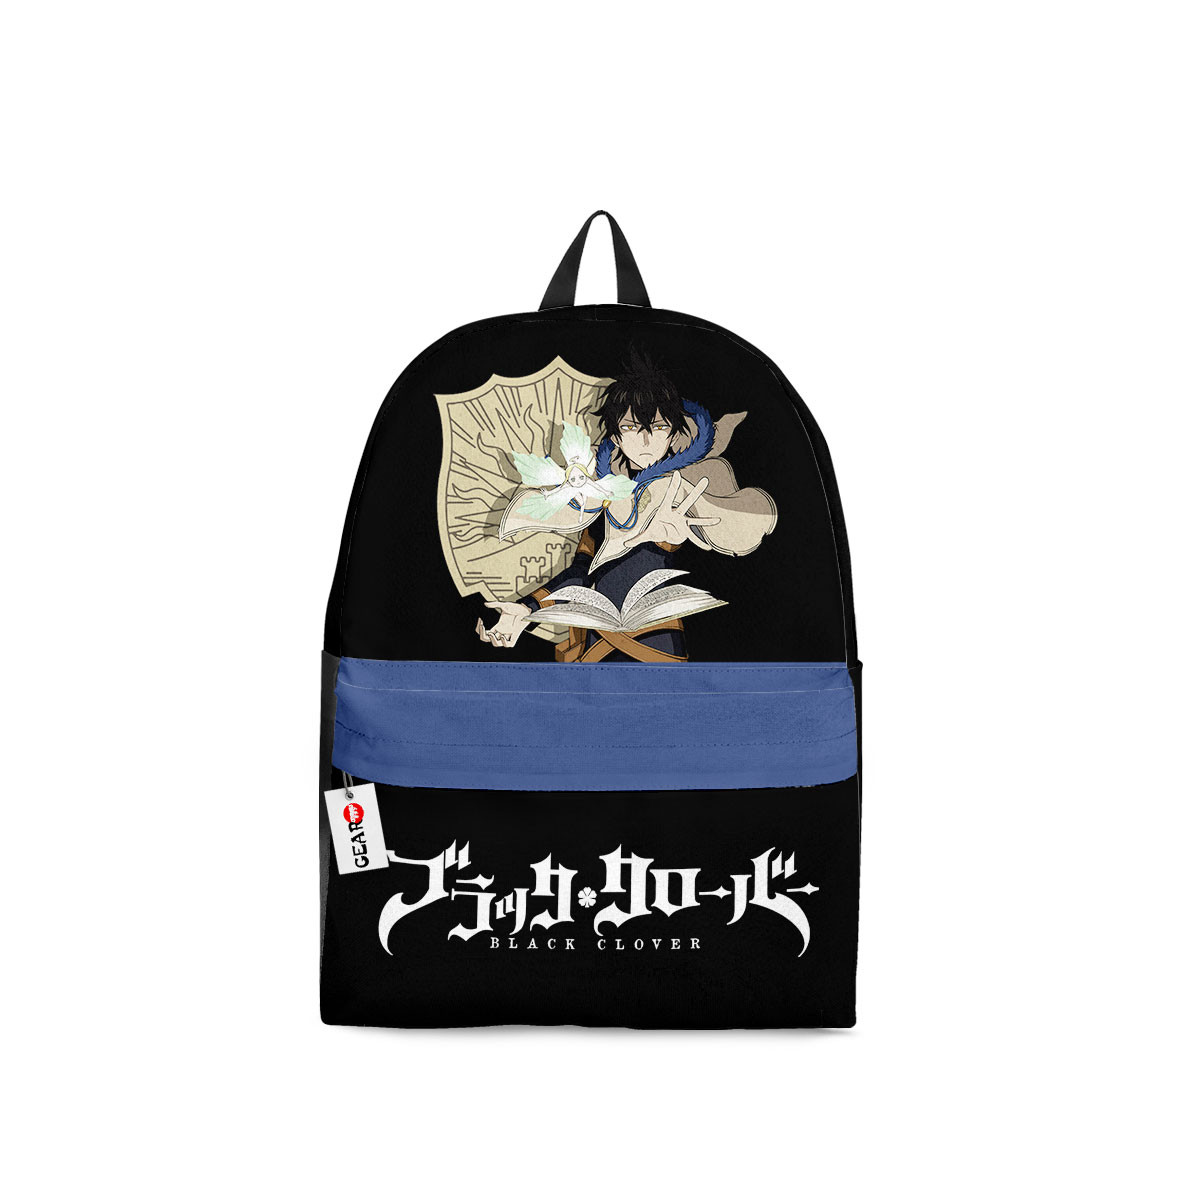 BEST Yuno Grinberryall Black Clover Anime Backpack Bag1